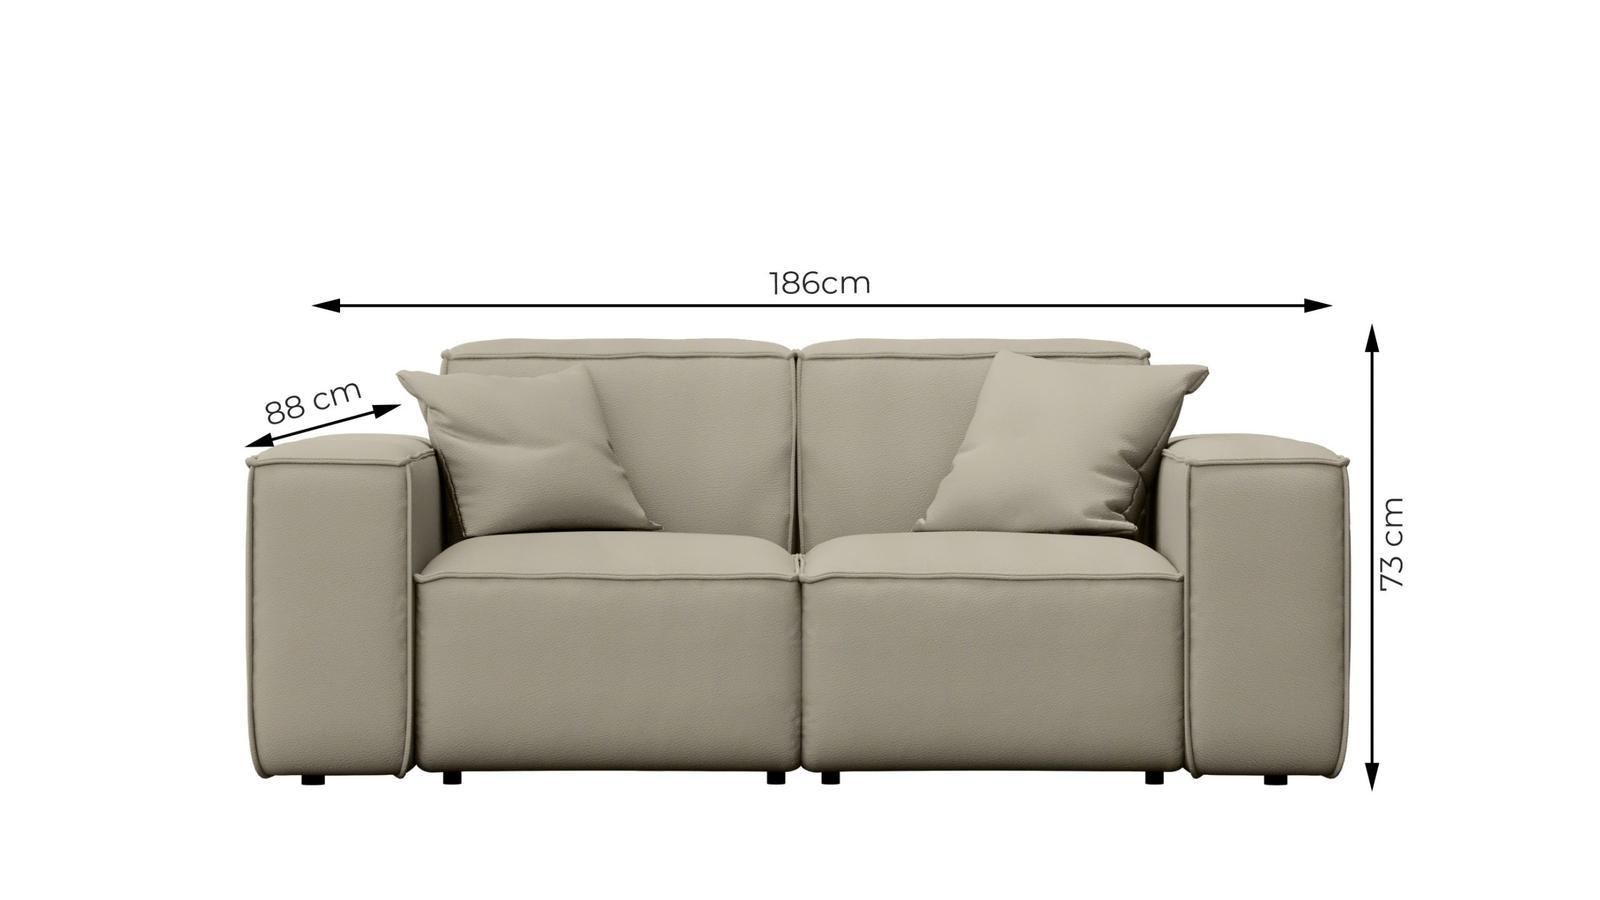 Sofa ogrodowa MALIBU 186x73x88 cm wodoodporna UV 2-os + 2 poduszki do ogrodu kremowa nr. 3